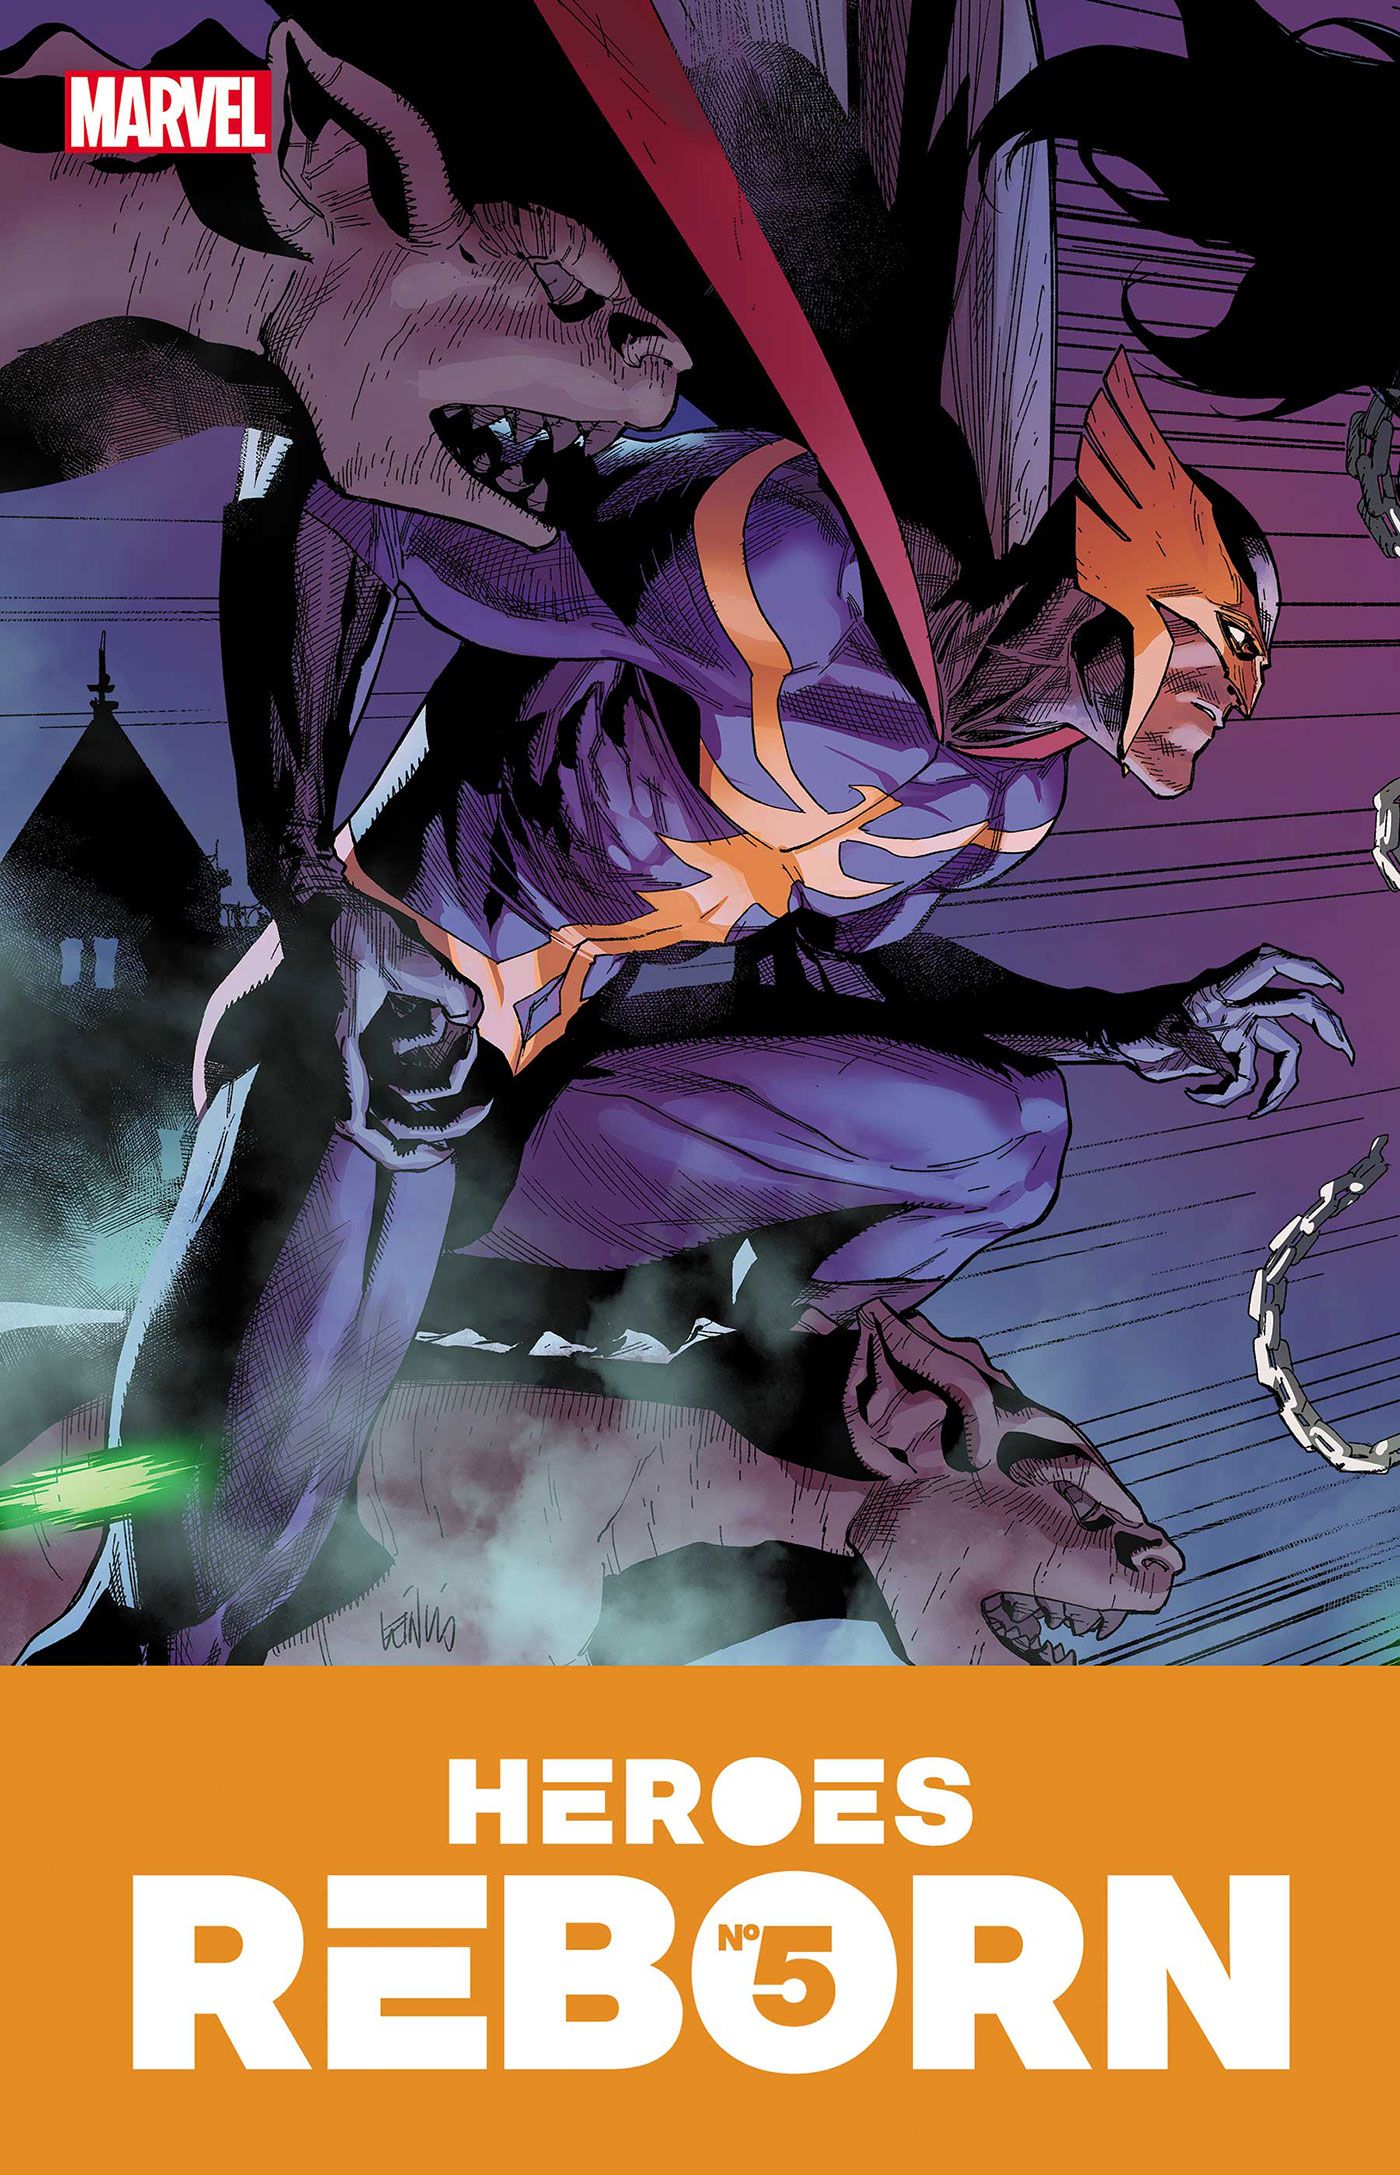 Heroes Reborn Becomes Heroes Return in Marvel's June 2021 Comic Releases